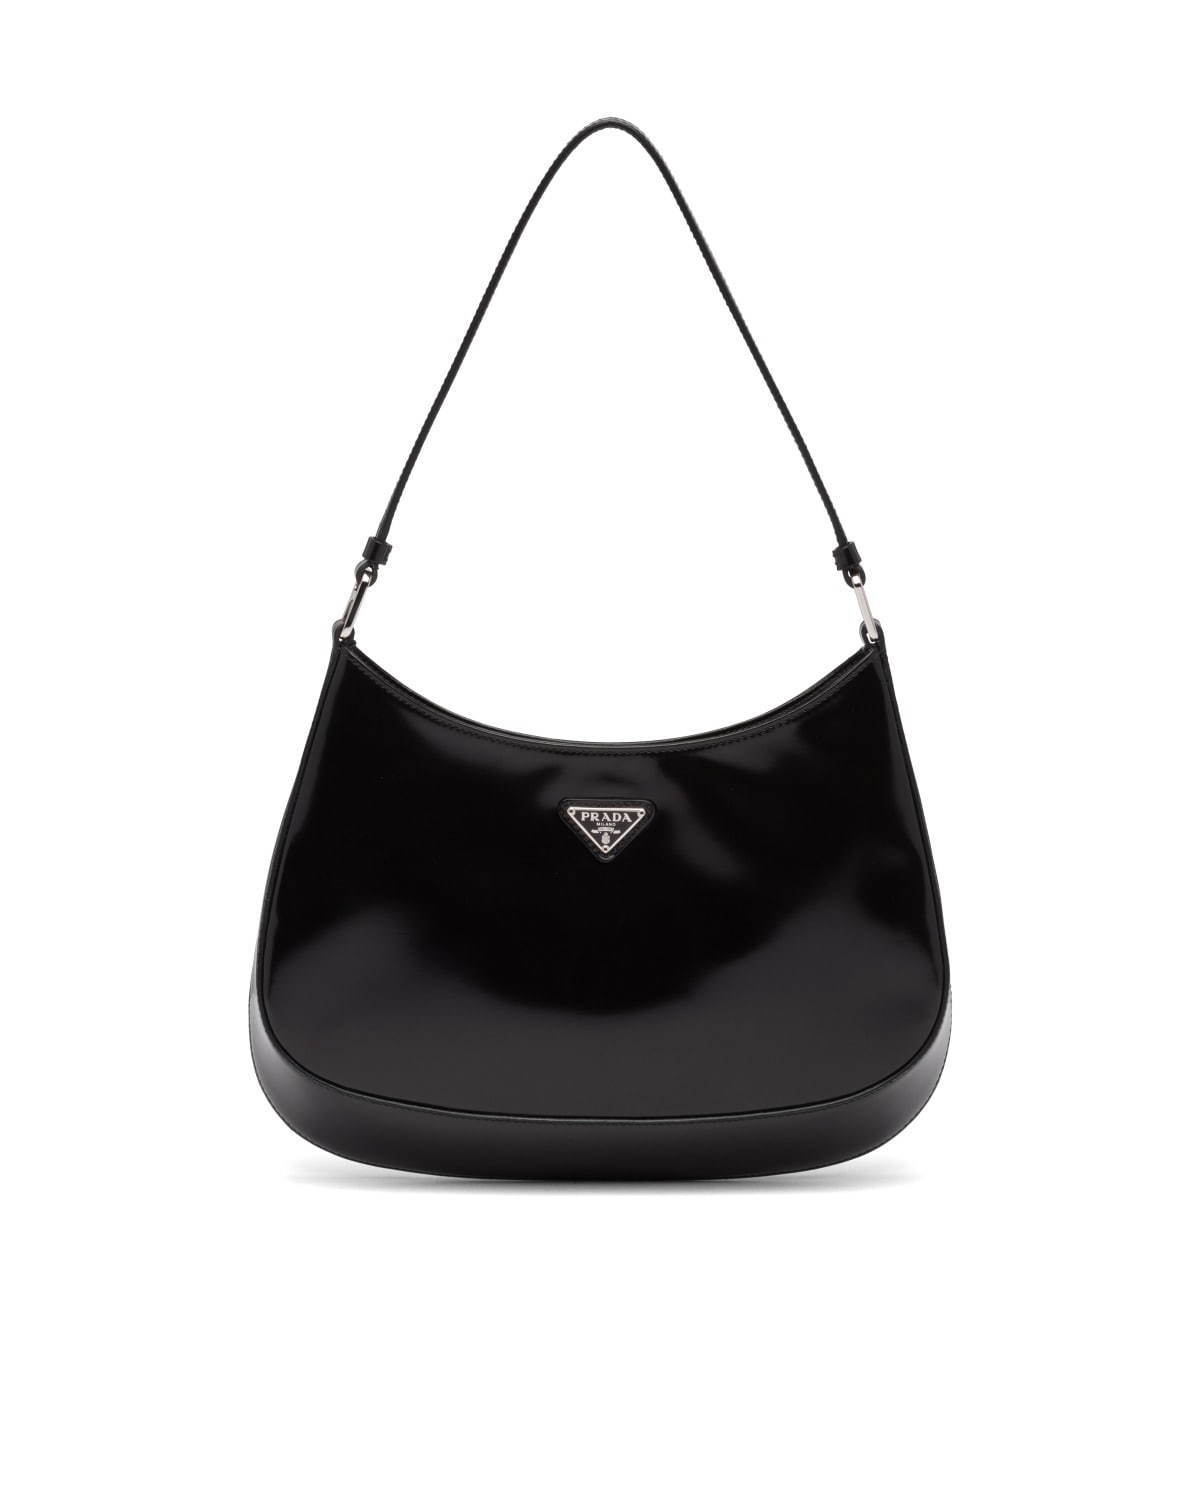 プラダの新作バッグ「プラダ クレオ」優雅なカーブを描くエナメルレザーのハンドバッグ - ファッションプレス